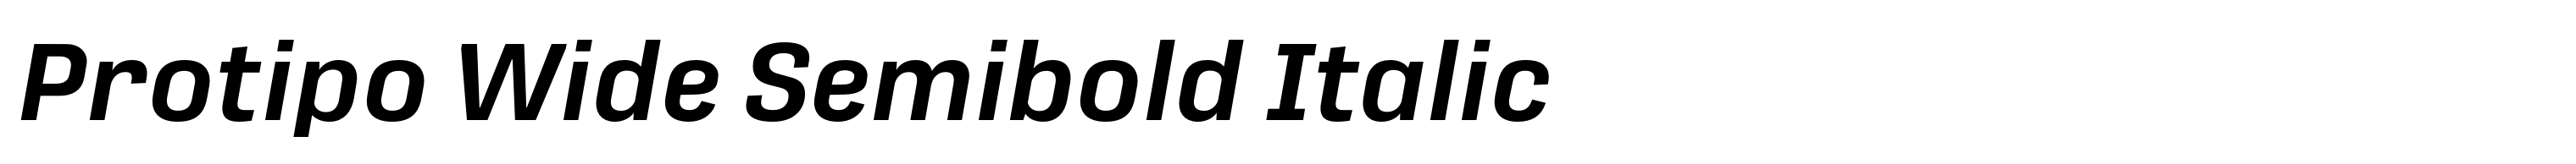 Protipo Wide Semibold Italic